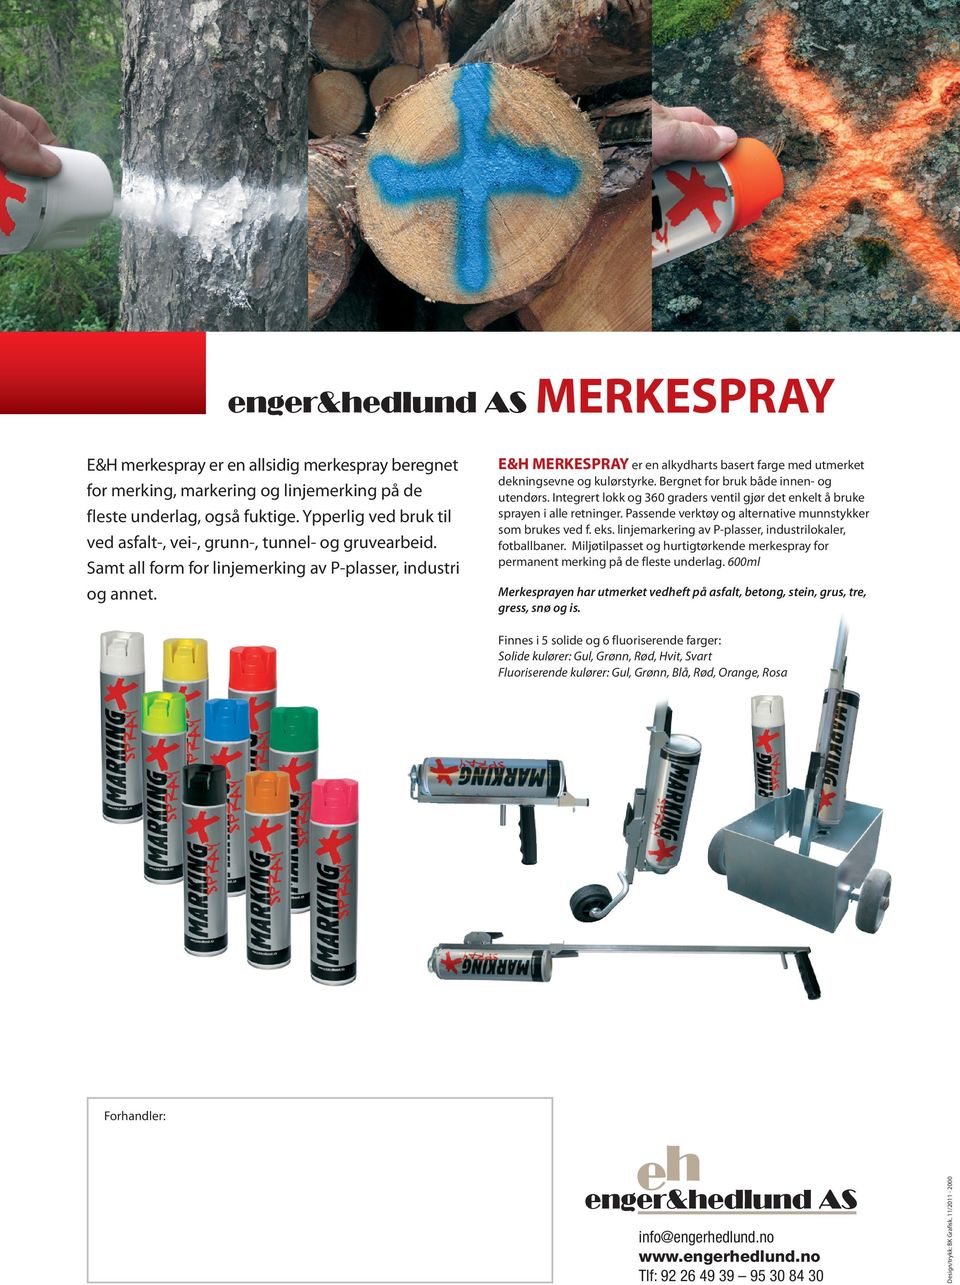 E&H MERKESPRAY er en alkydharts basert farge med utmerket dekningsevne og kulørstyrke. Bergnet for bruk både innen- og utendørs.